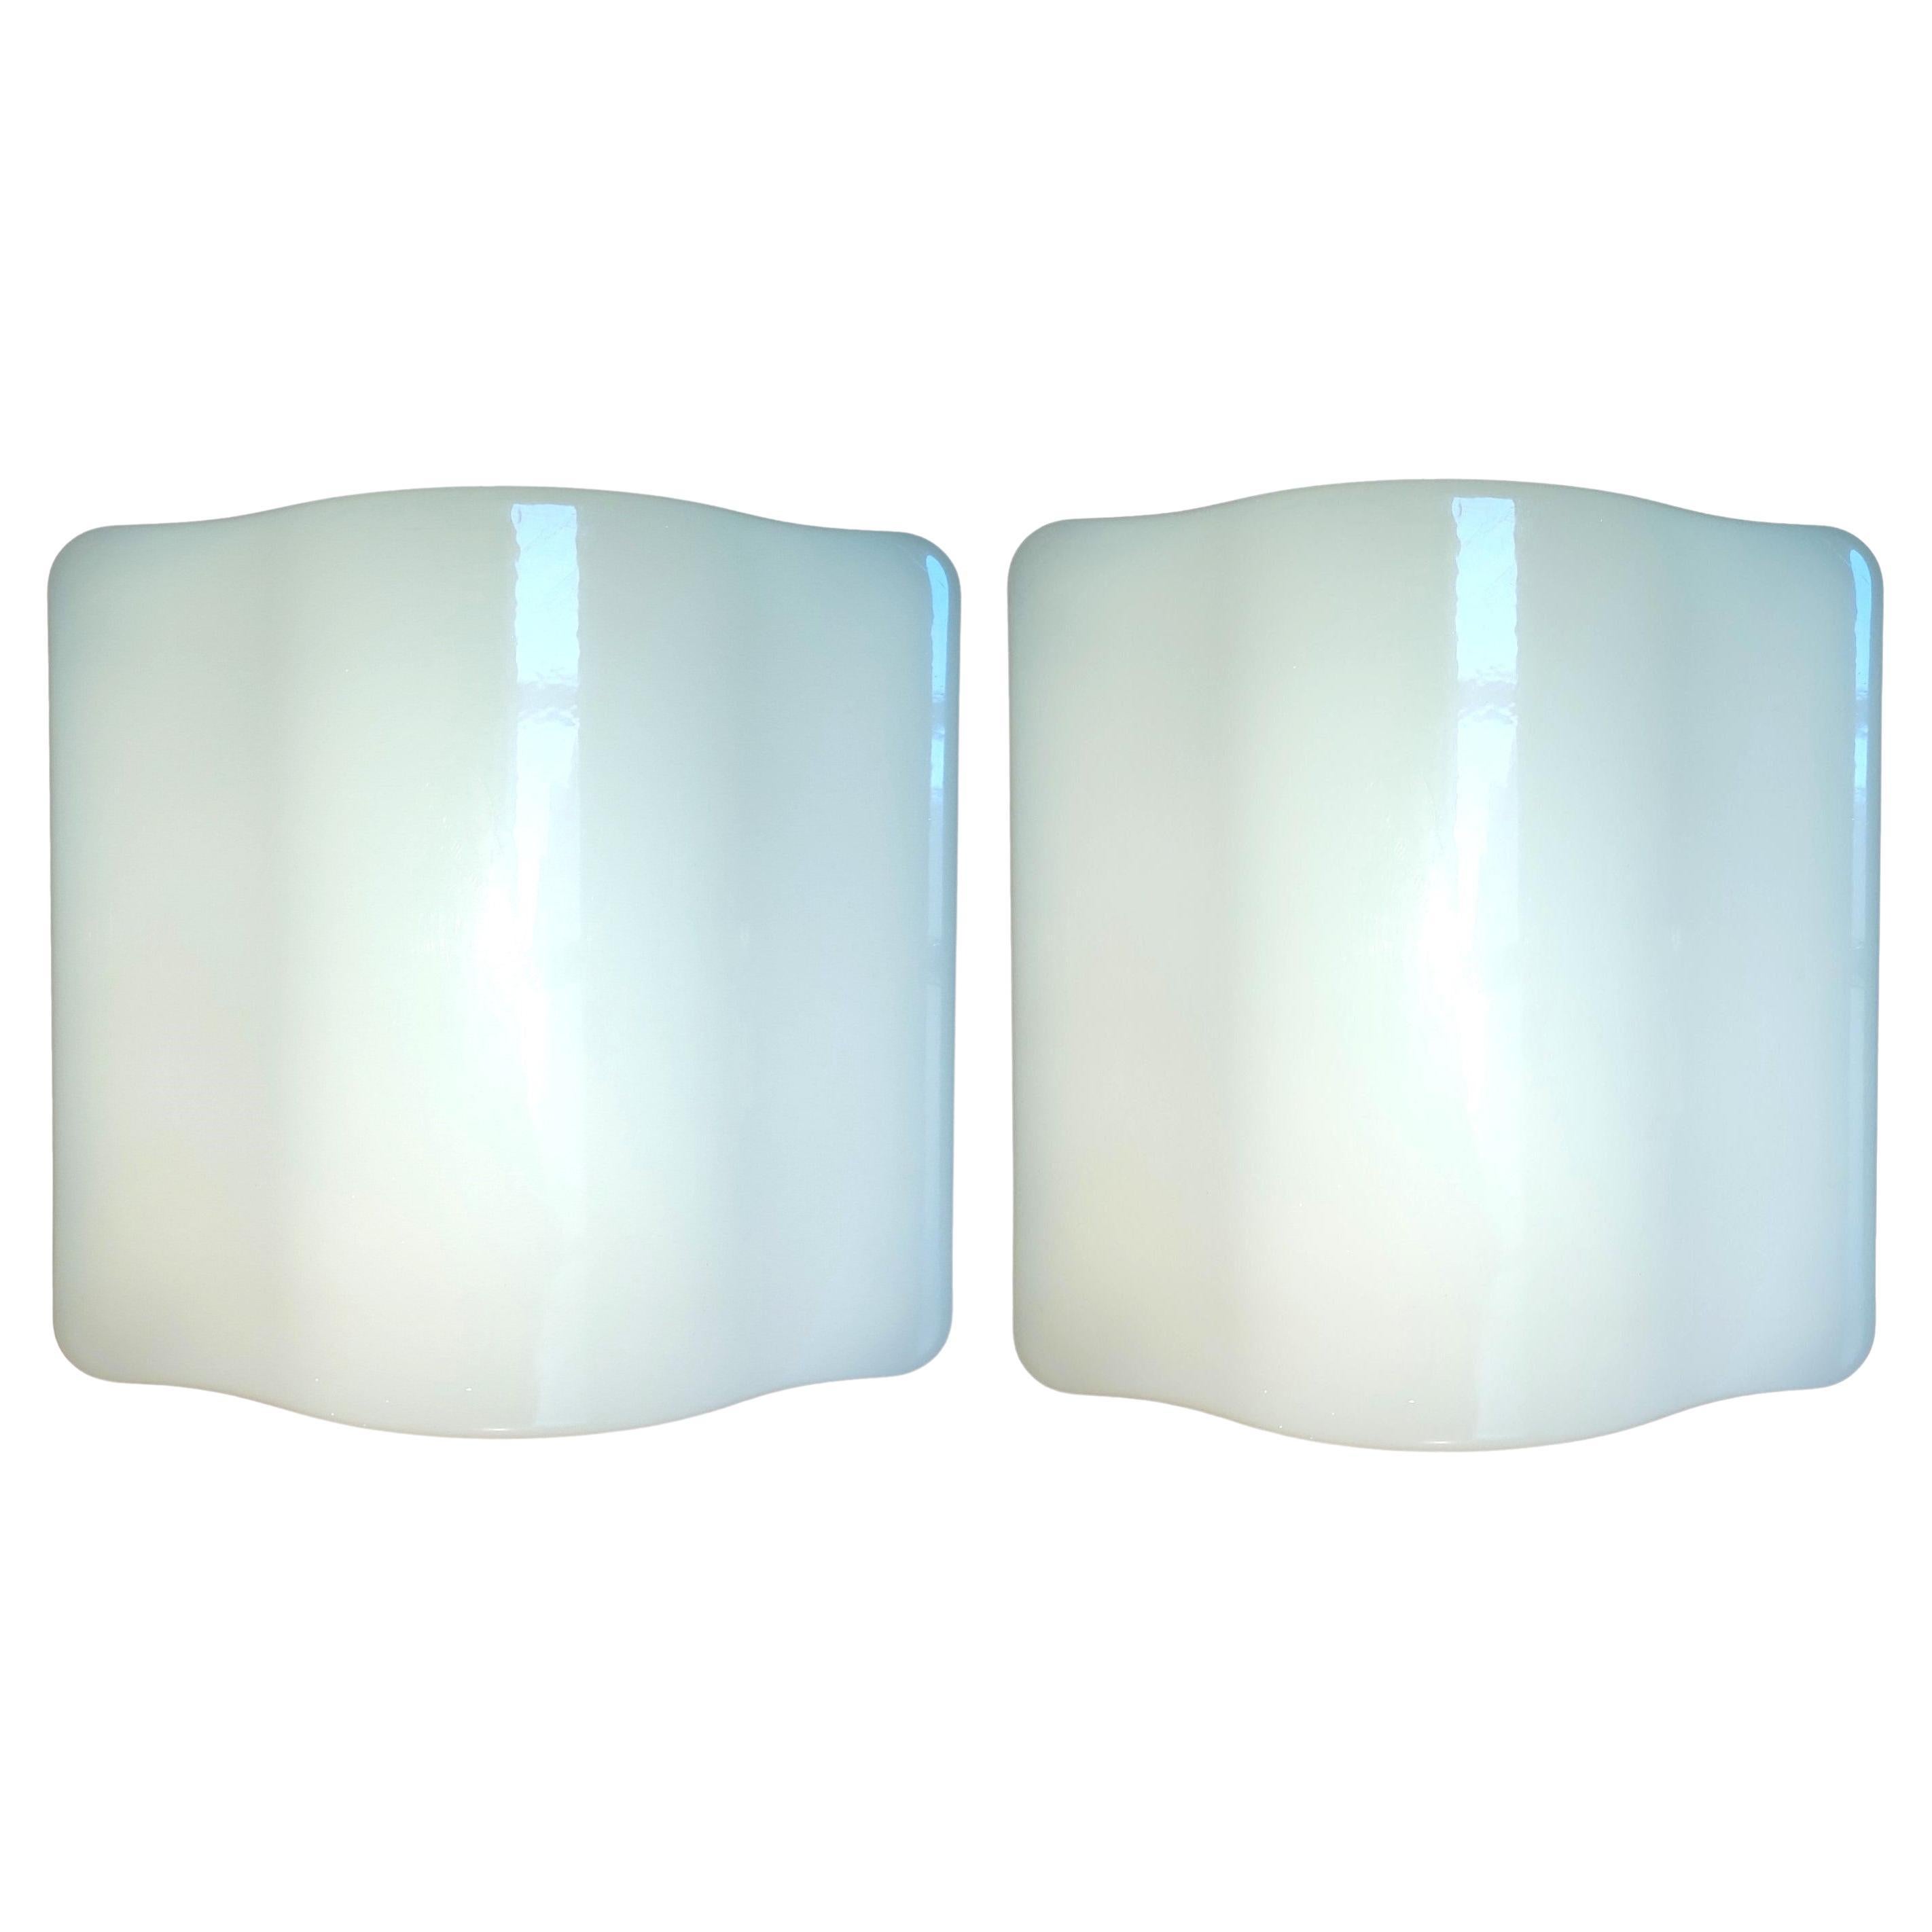 pair of wall lamps iguzzini wall lamps wave model 5360 - guzzini 50x50